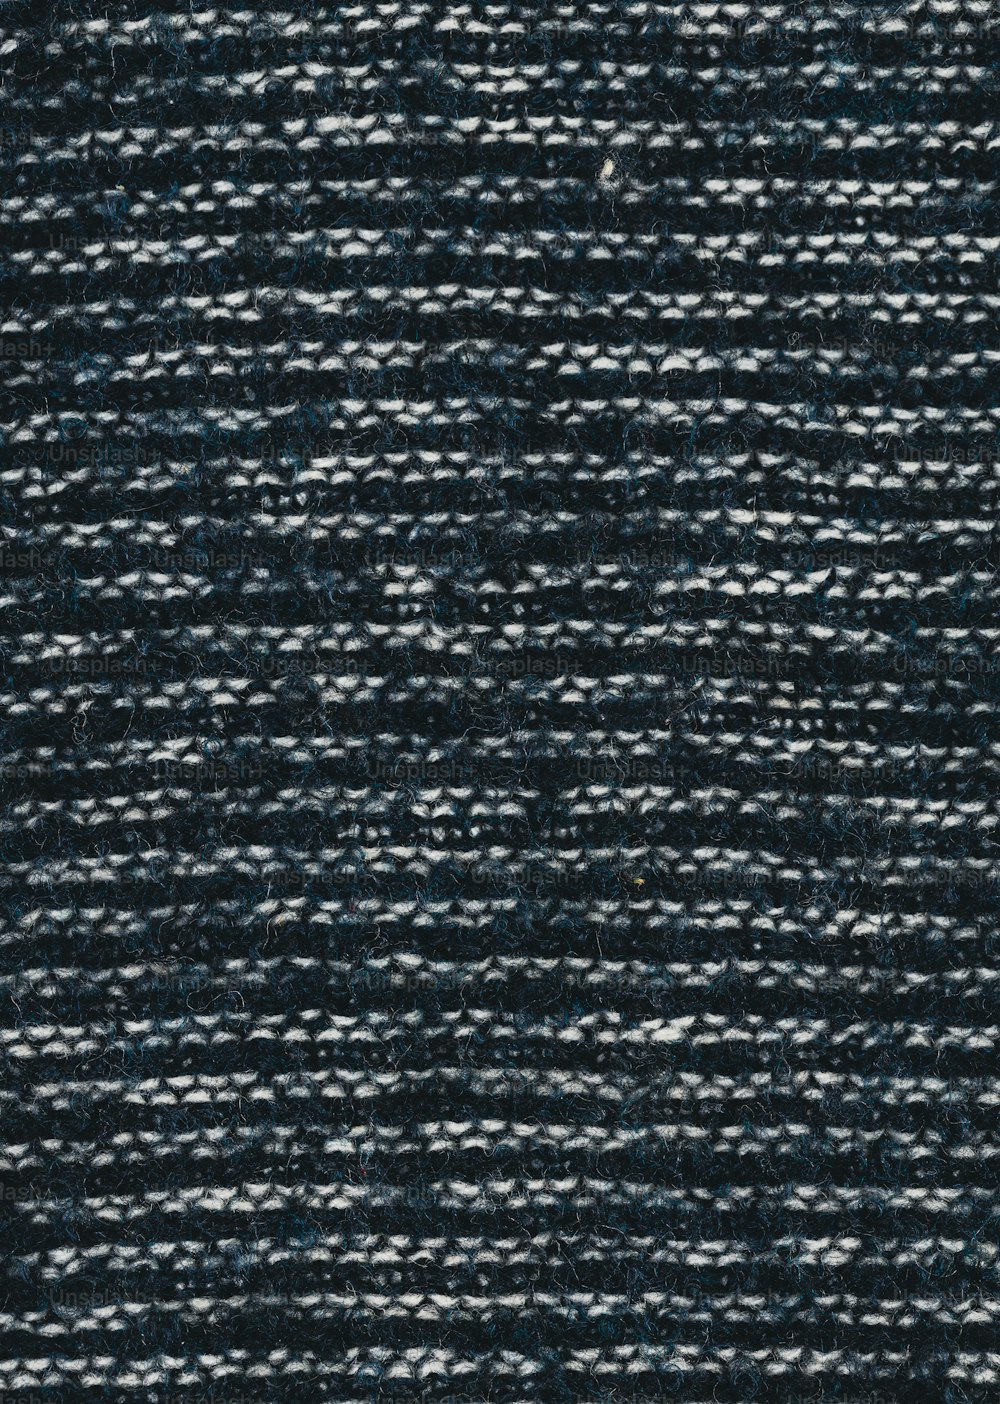 um close up de um tecido texturizado preto e branco